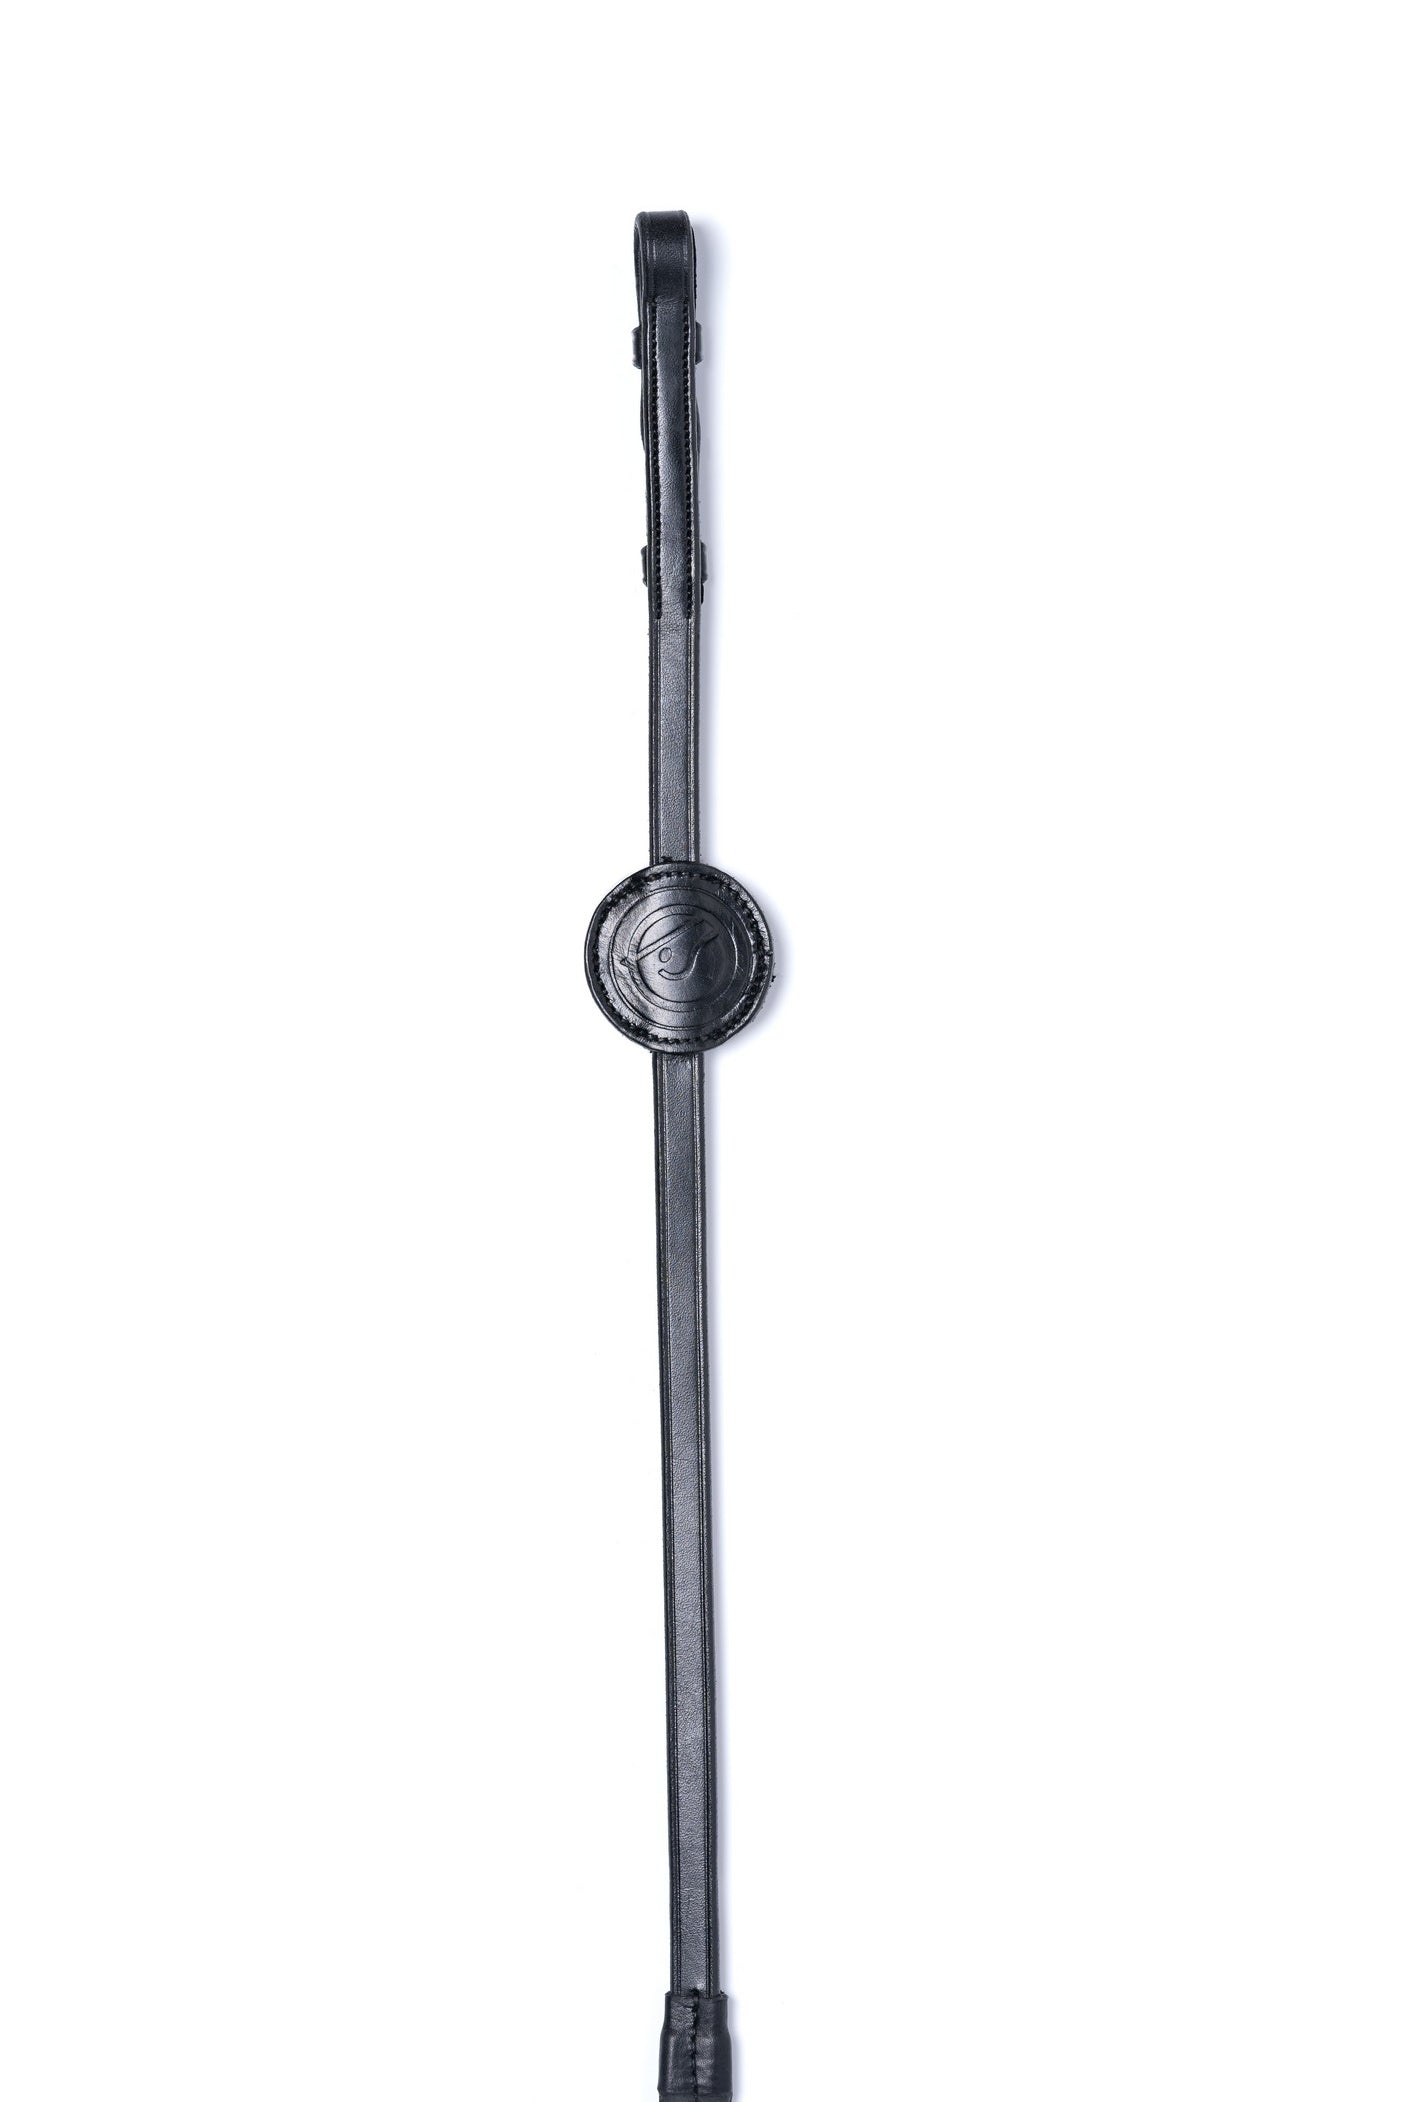 TRUST Maastricht rubberen teugels (13 mm) lederen stops zilveren gespen Zwart